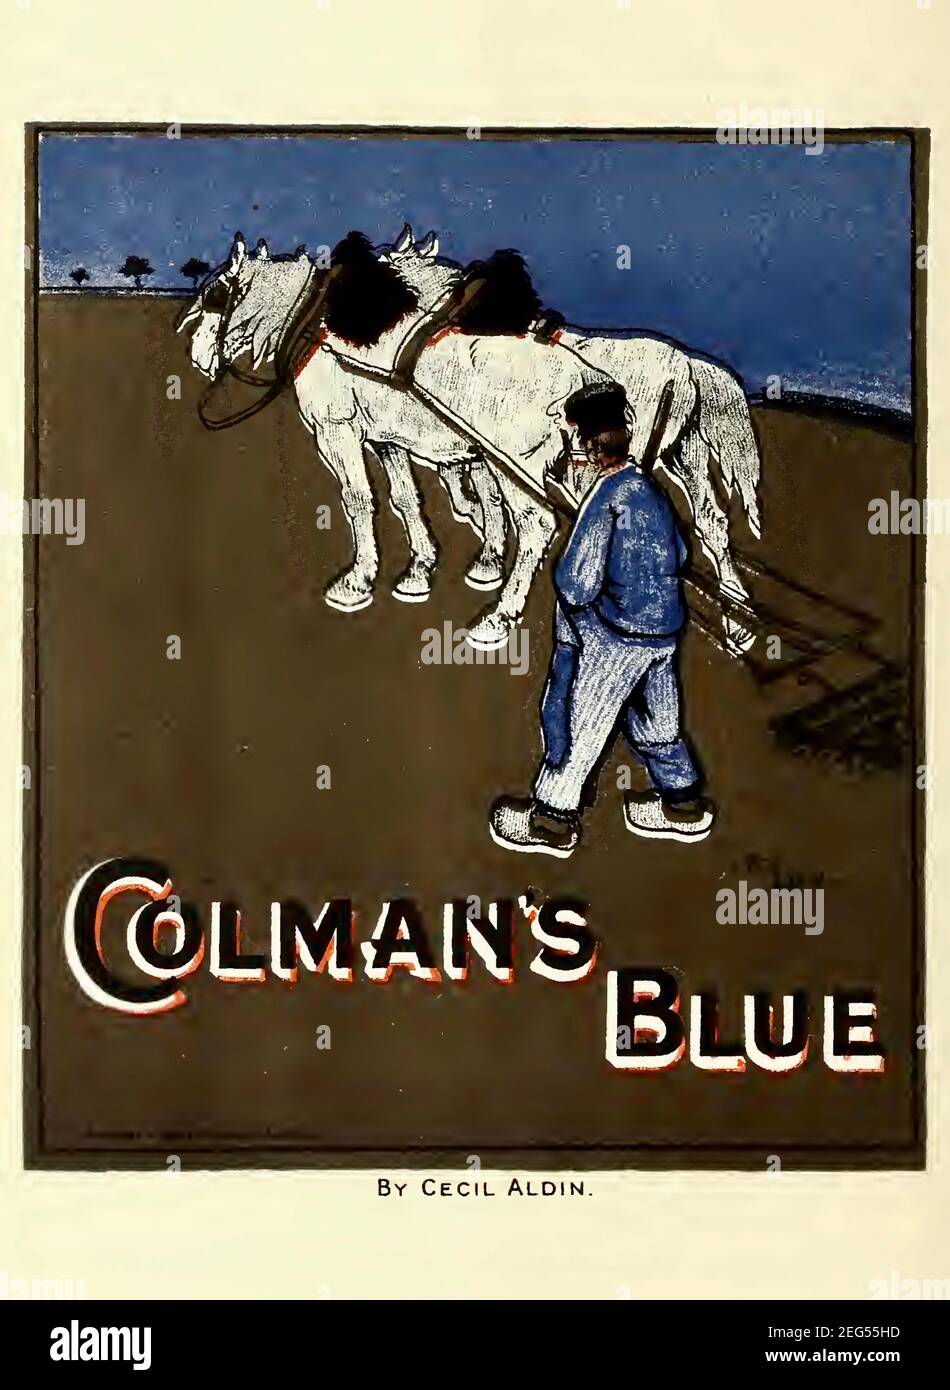 Poster retrò vintage che pubblicano Colman's Blue di Cecil Aldin. Scena rurale tradizionale con un pagliaccio e la sua squadra di cavalli aratro che lavorano il campo. Foto Stock